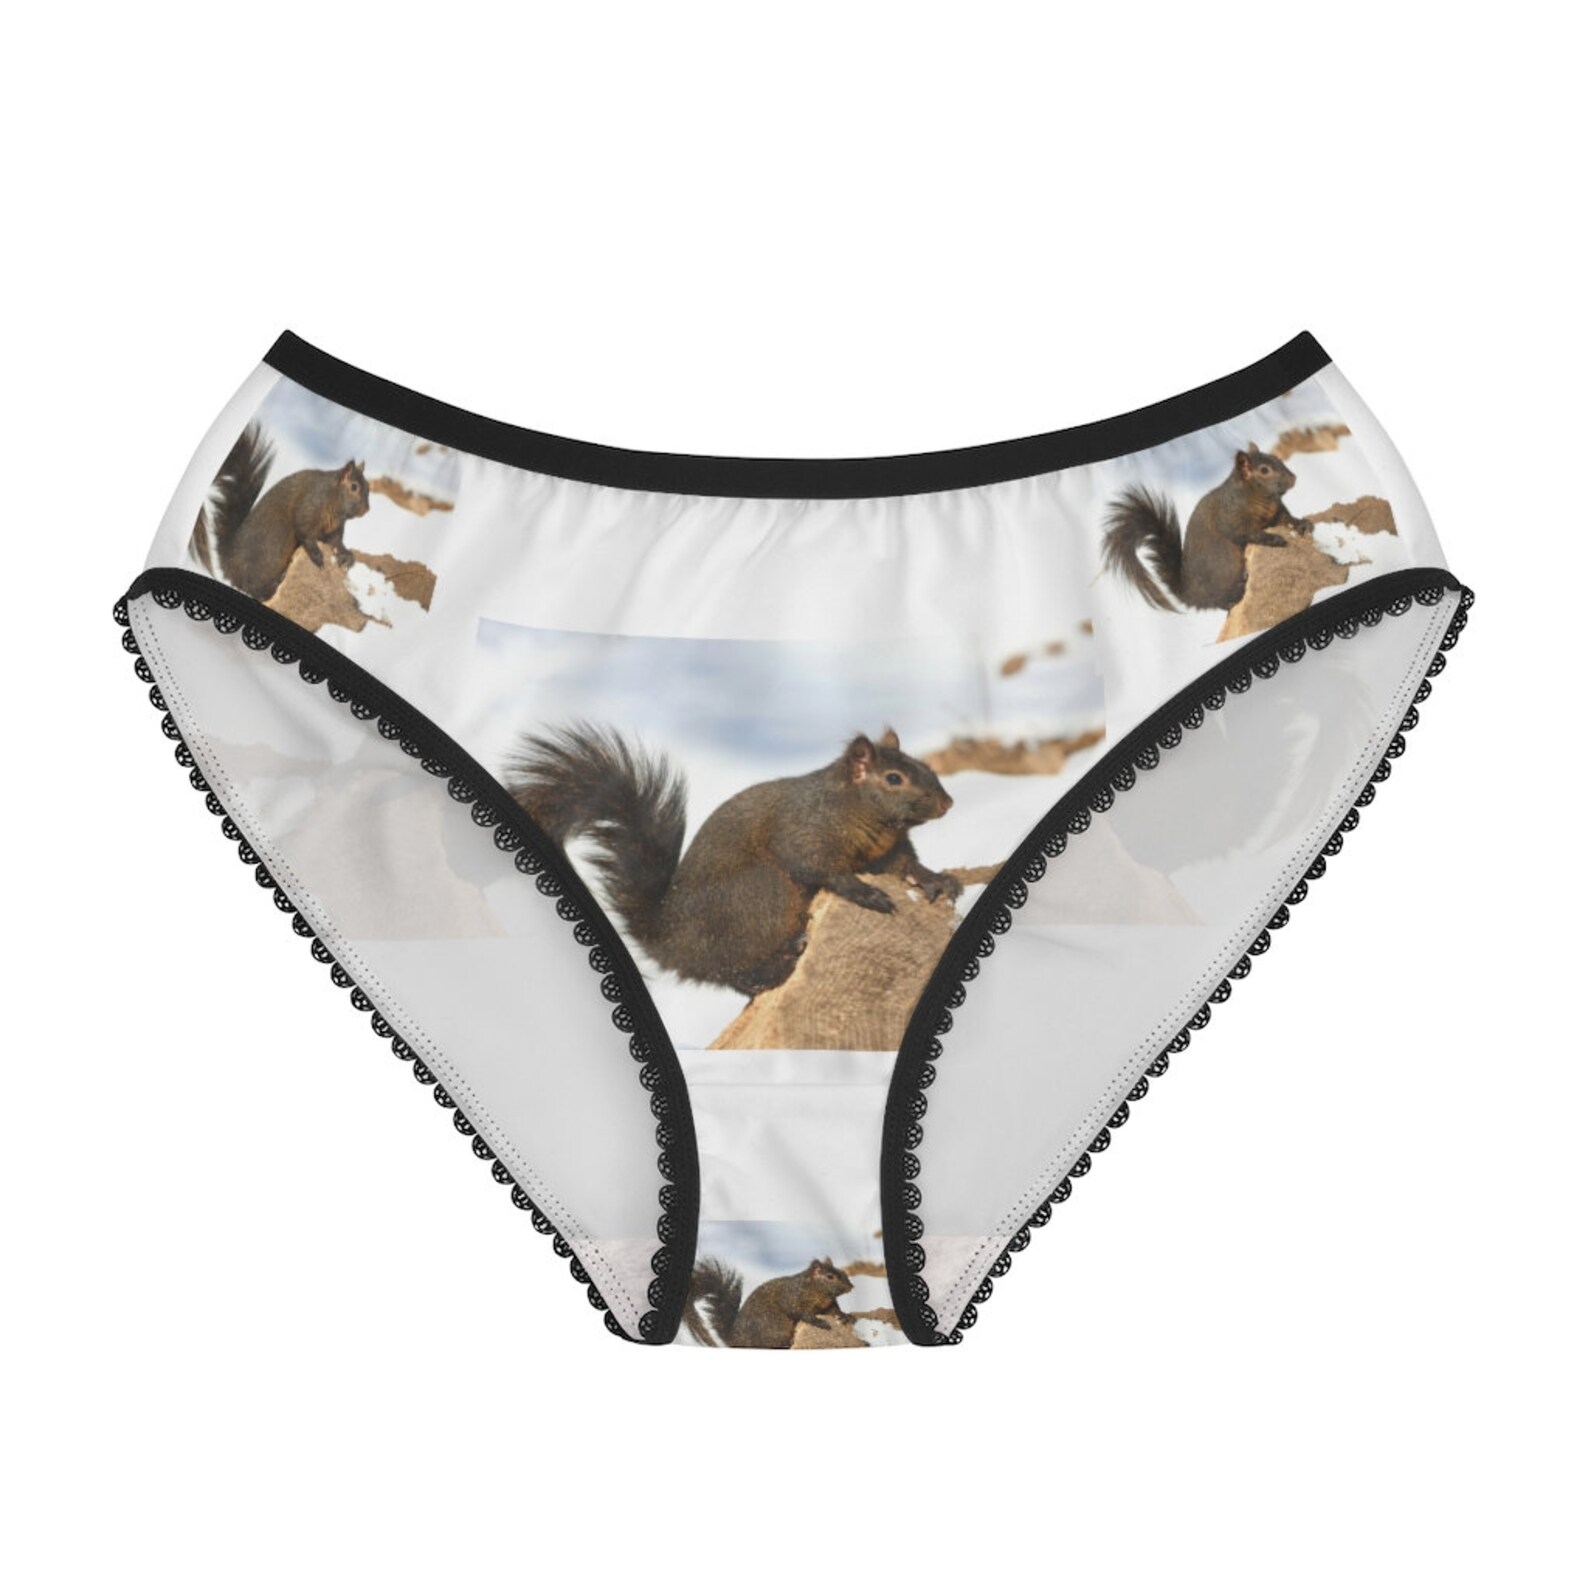 squirrl travel underwear